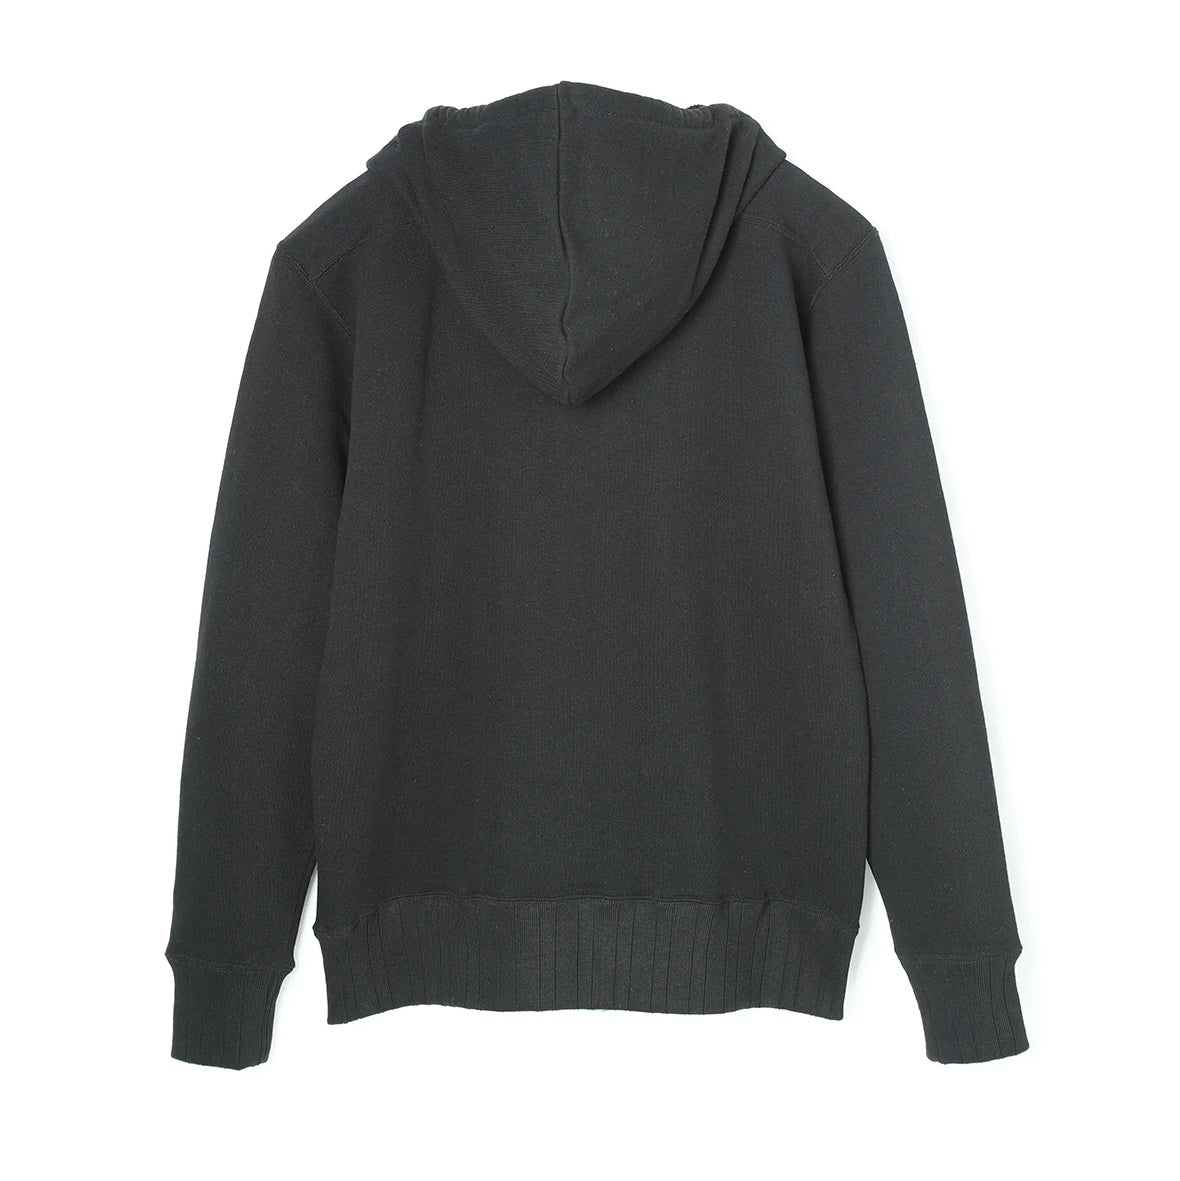 WearMasters - Lot.813 After Hooded Sweatshirt (Black)